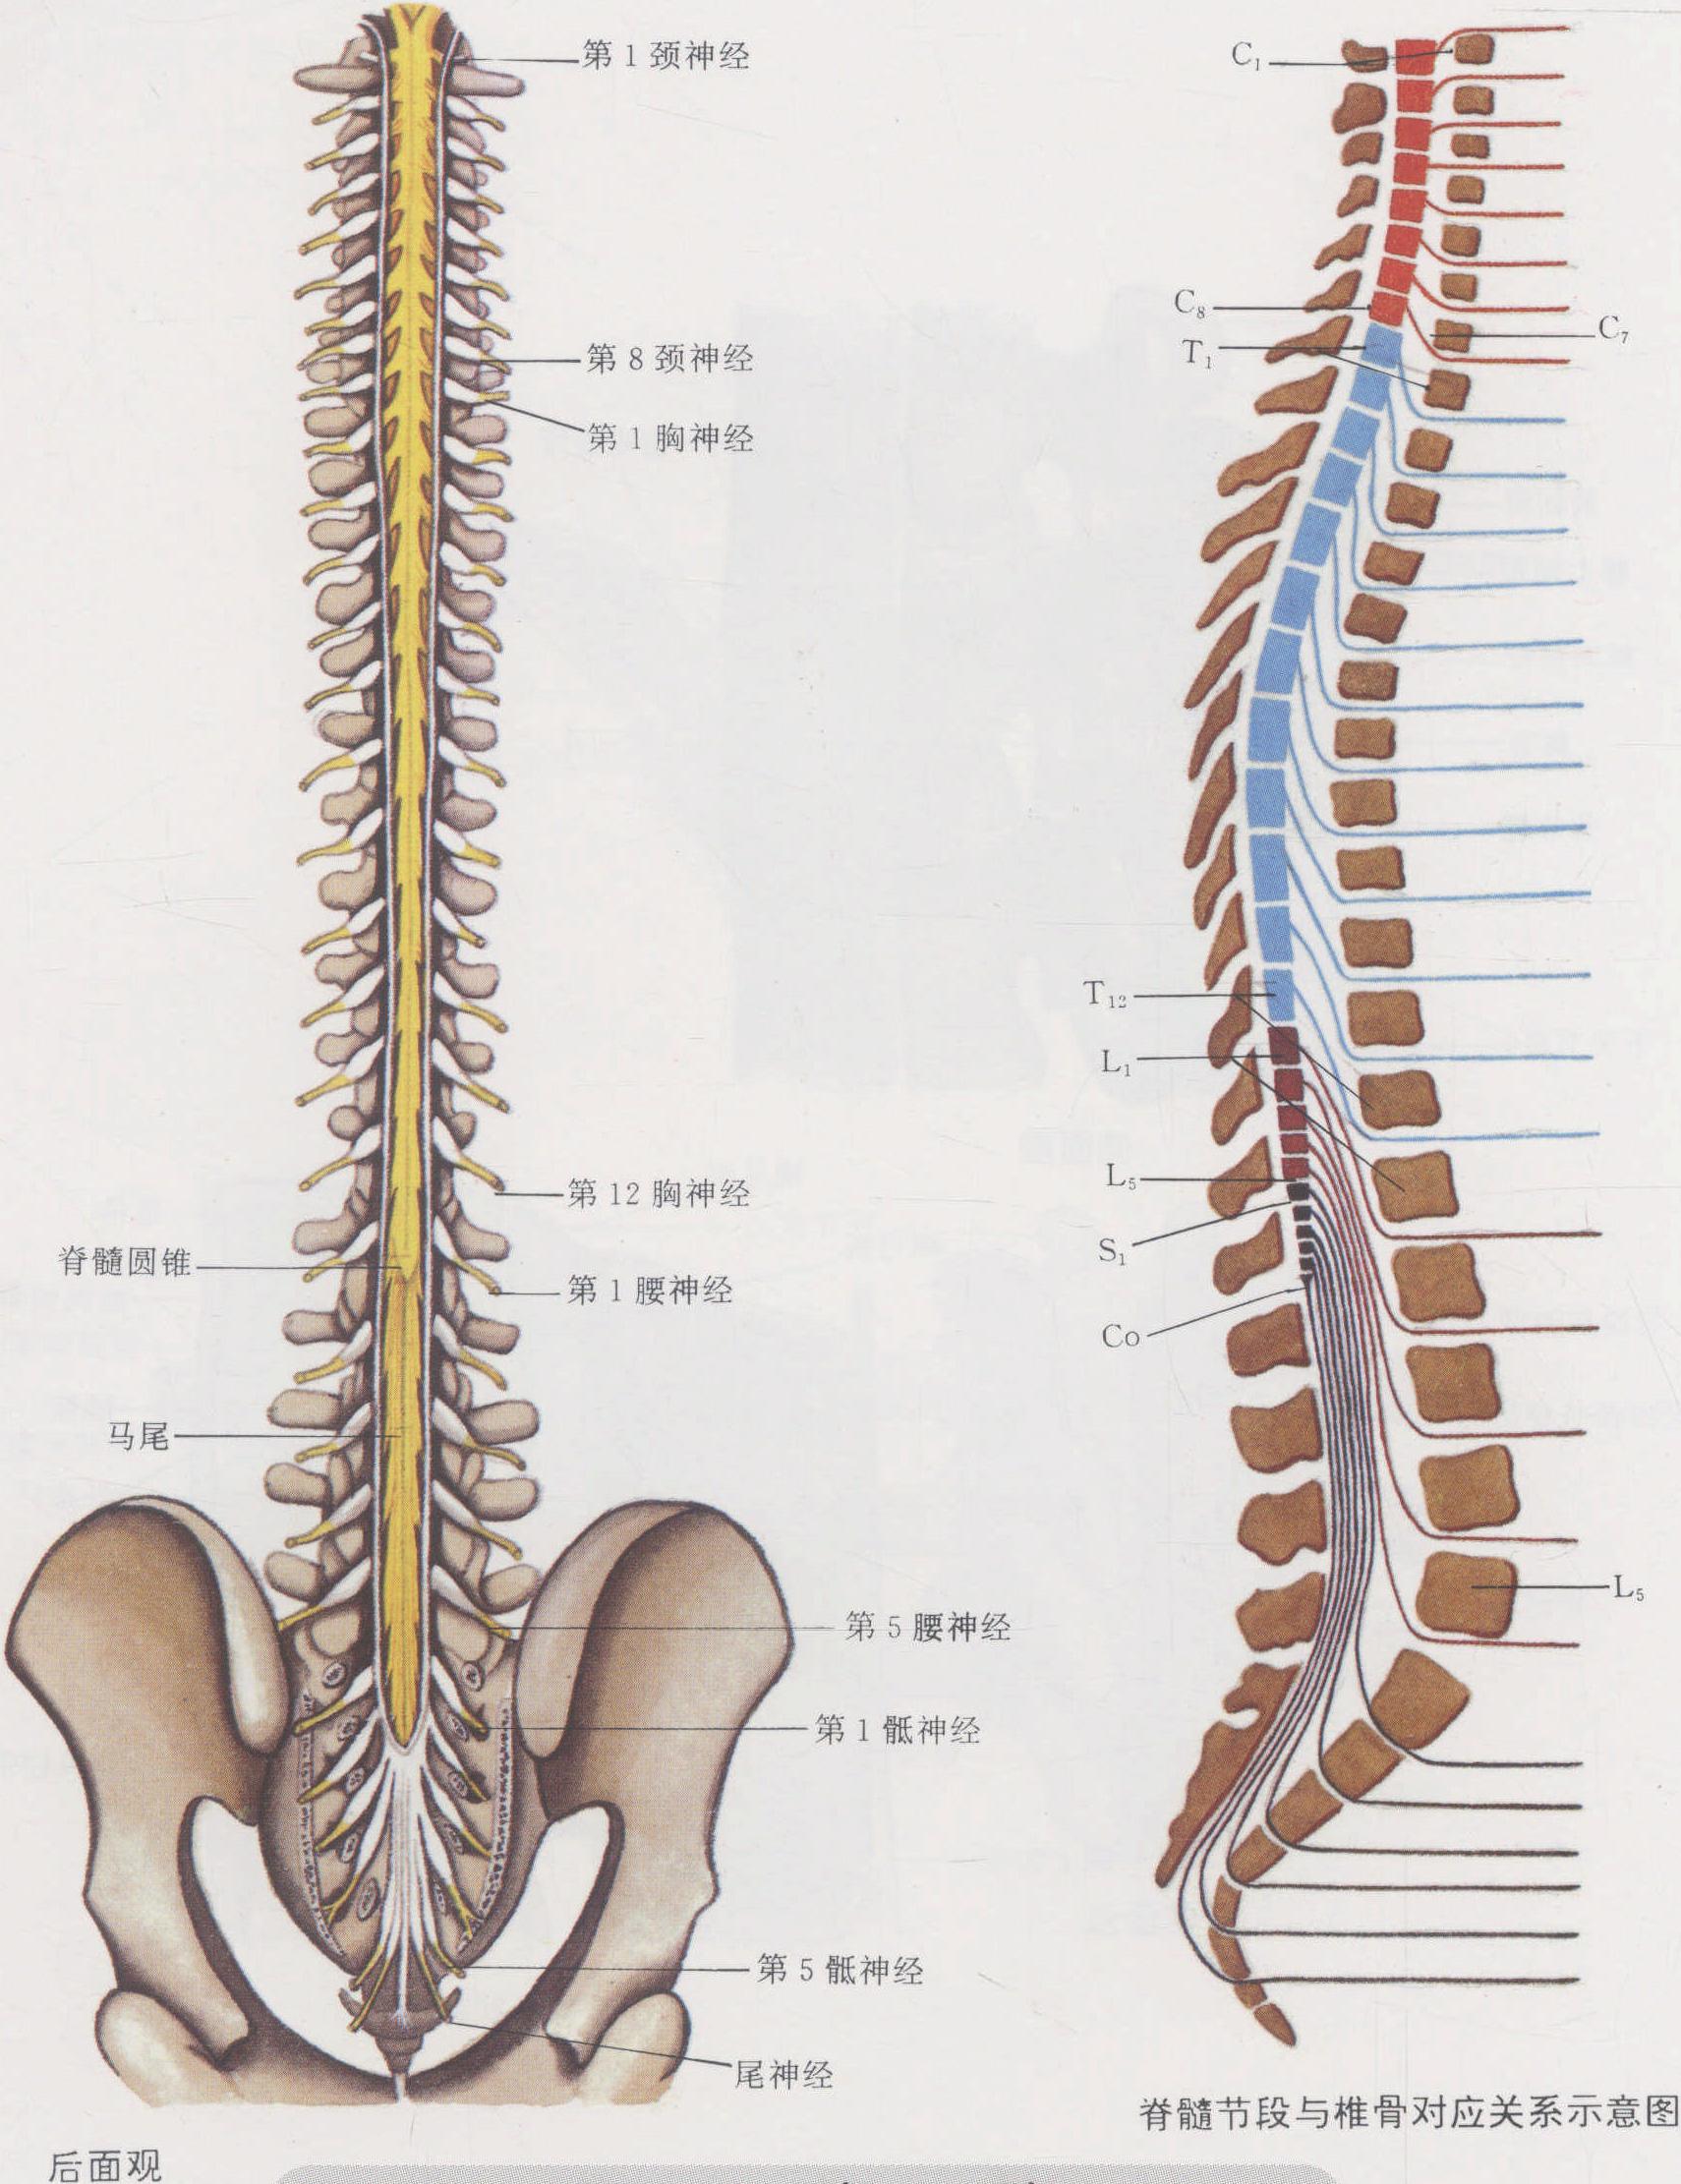 脊髓、脊柱、脊神经高清解剖图 - 脑医汇 - 神外资讯 - 神介资讯